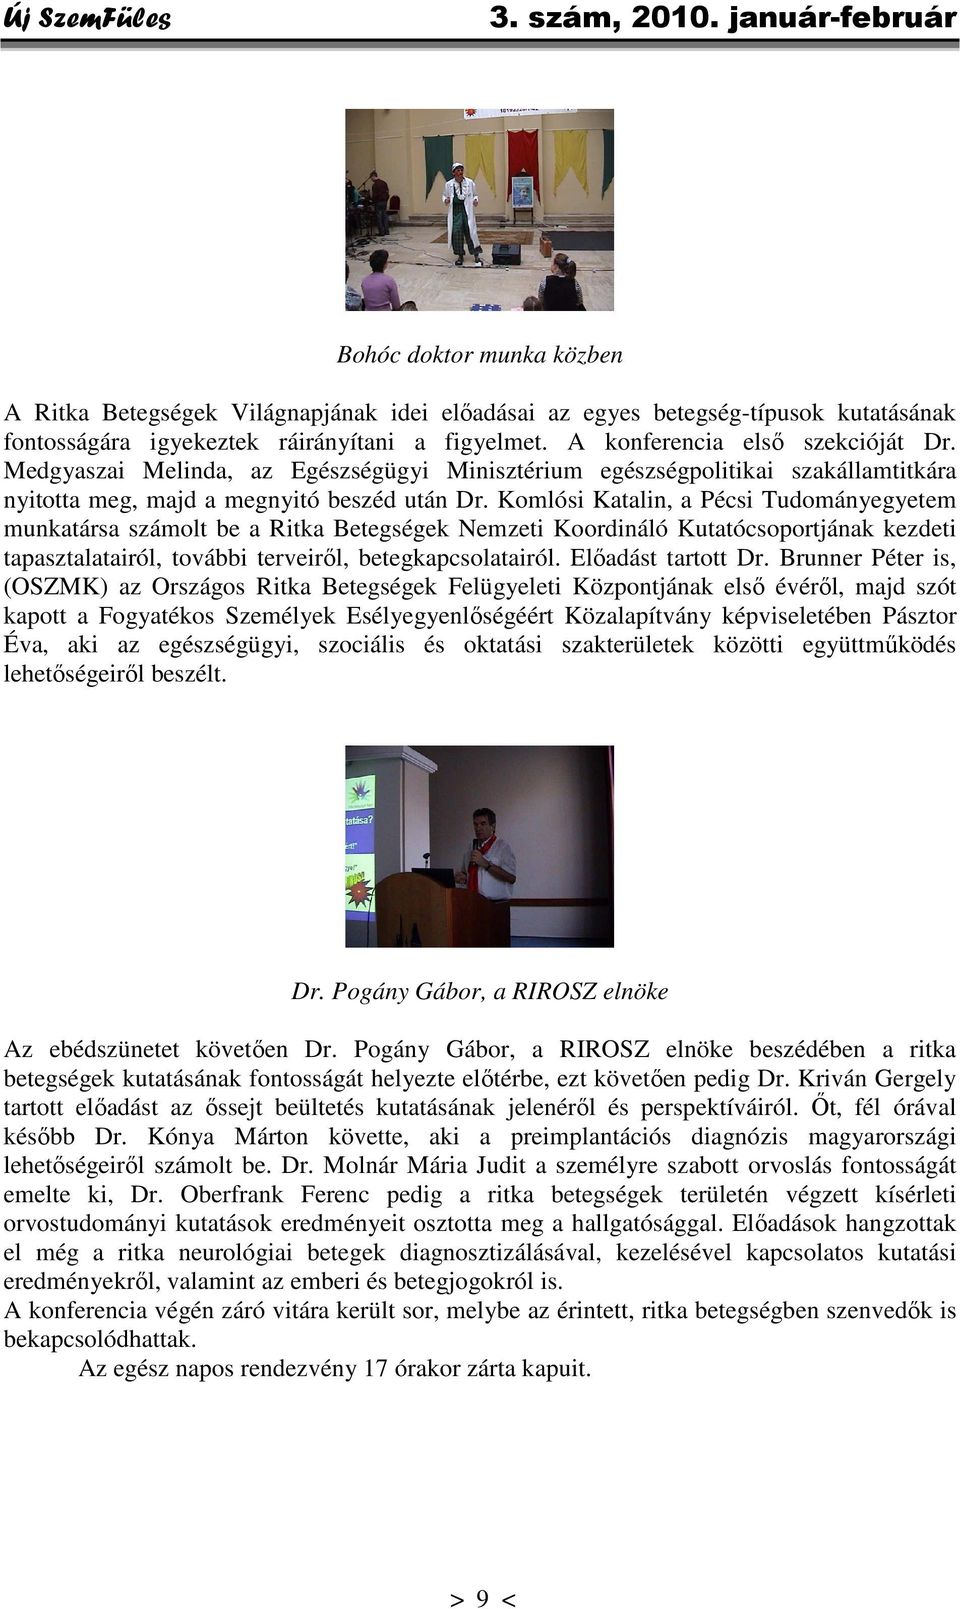 Komlósi Katalin, a Pécsi Tudományegyetem munkatársa számolt be a Ritka Betegségek Nemzeti Koordináló Kutatócsoportjának kezdeti tapasztalatairól, további terveiről, betegkapcsolatairól.